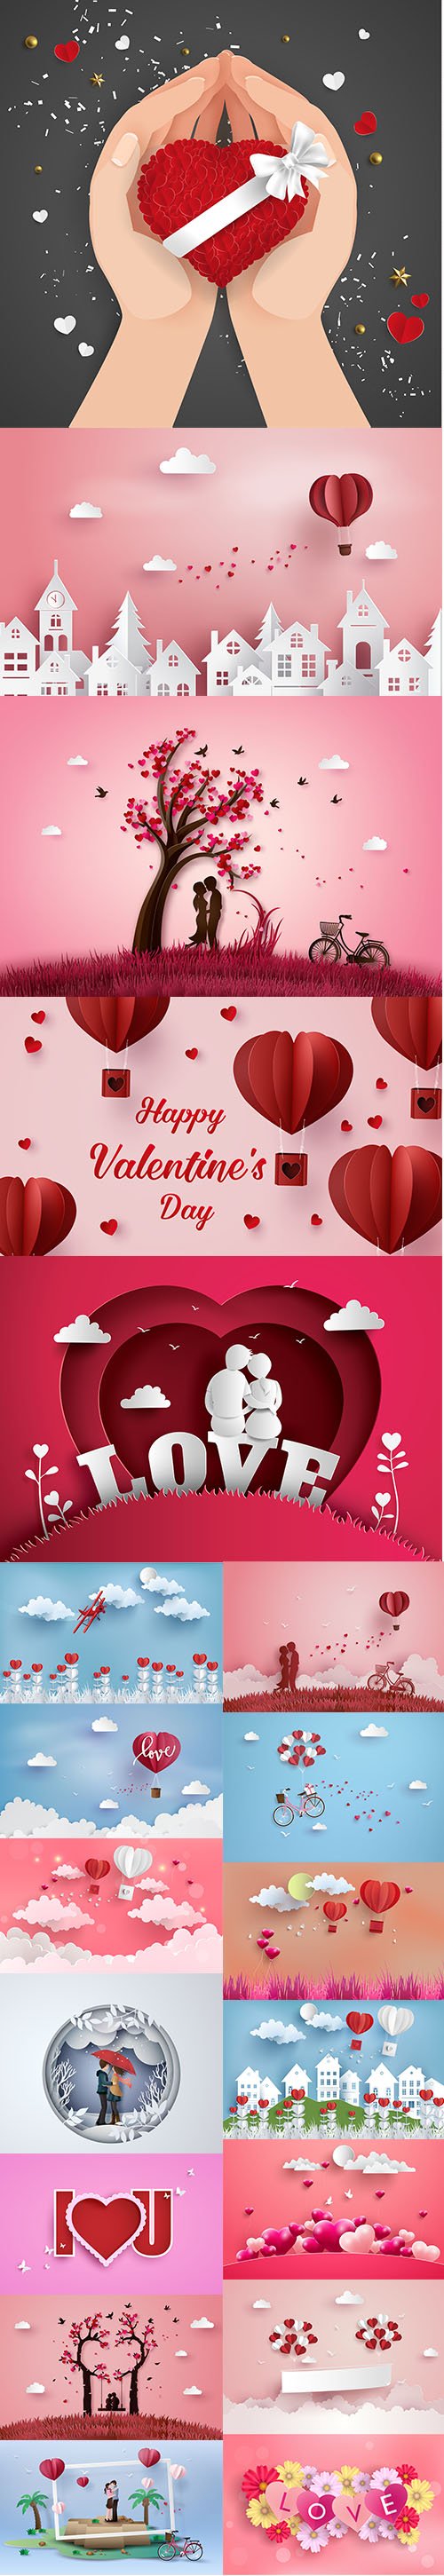 Happy Valentine's Day illustration set Vol 9